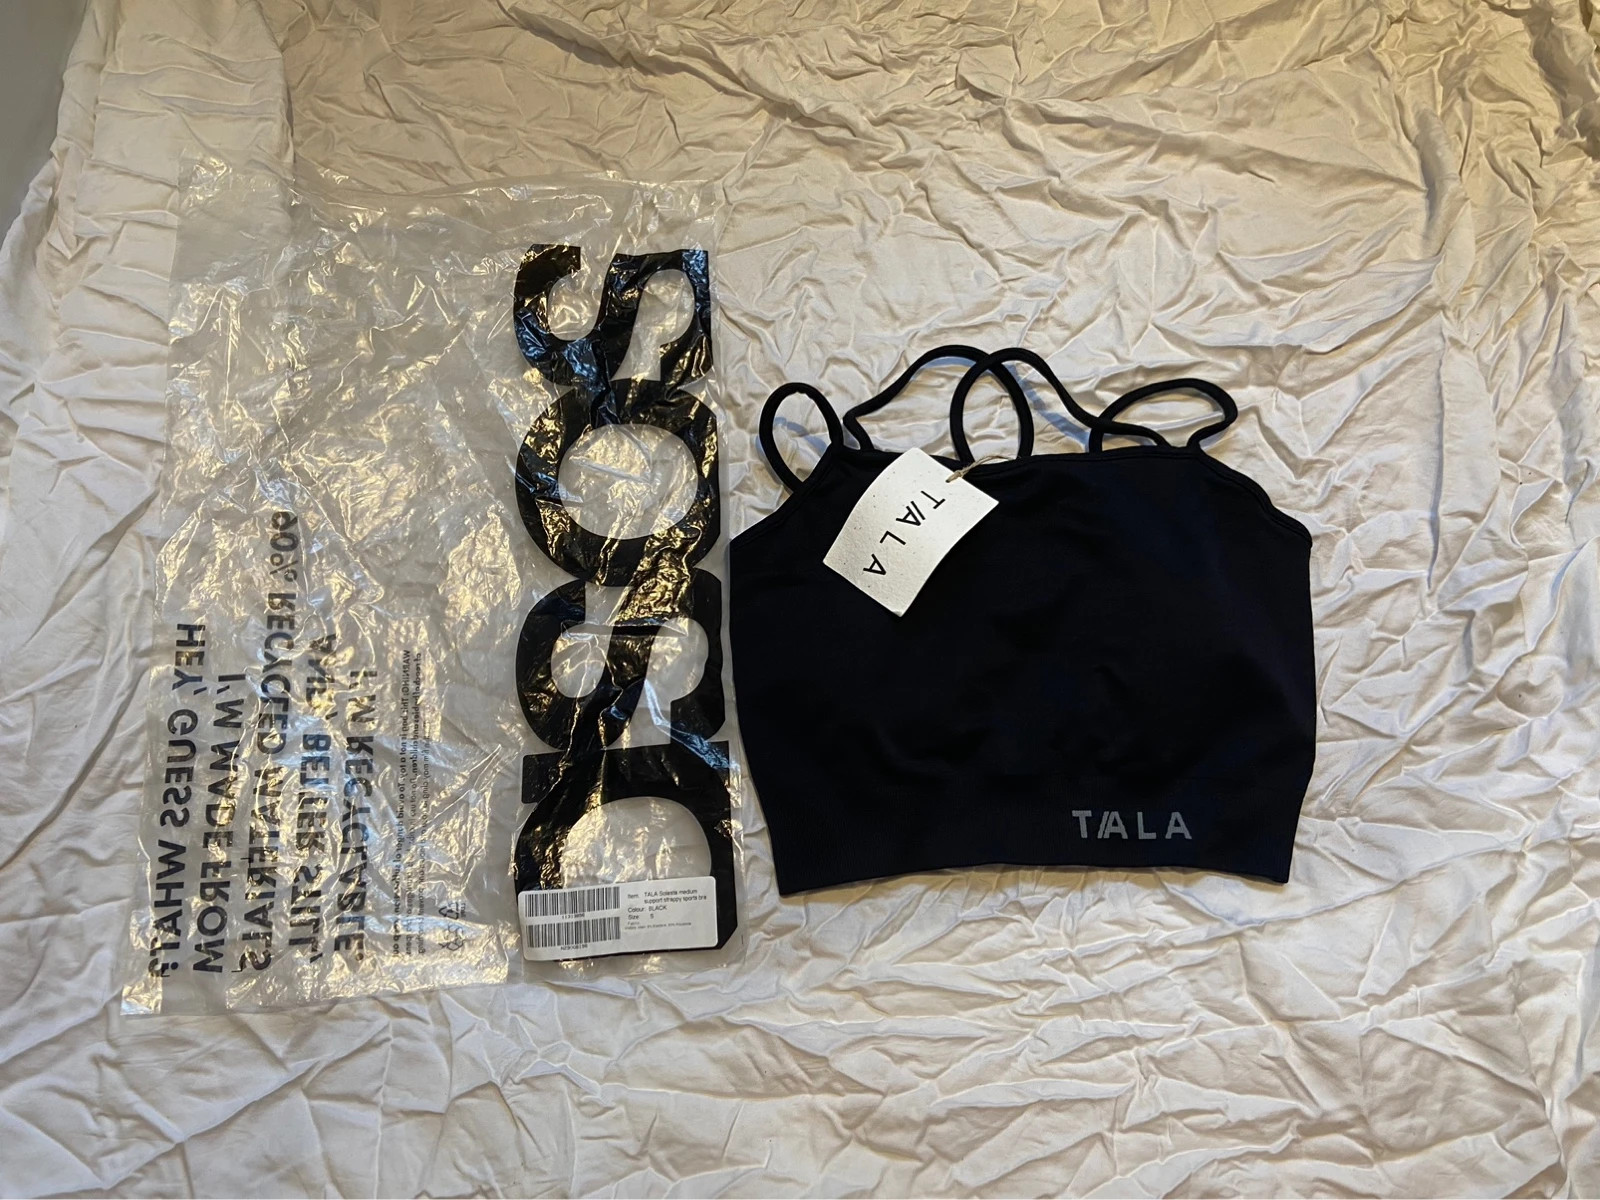 Small black TALA sports bra / crop top, Solasta seamless